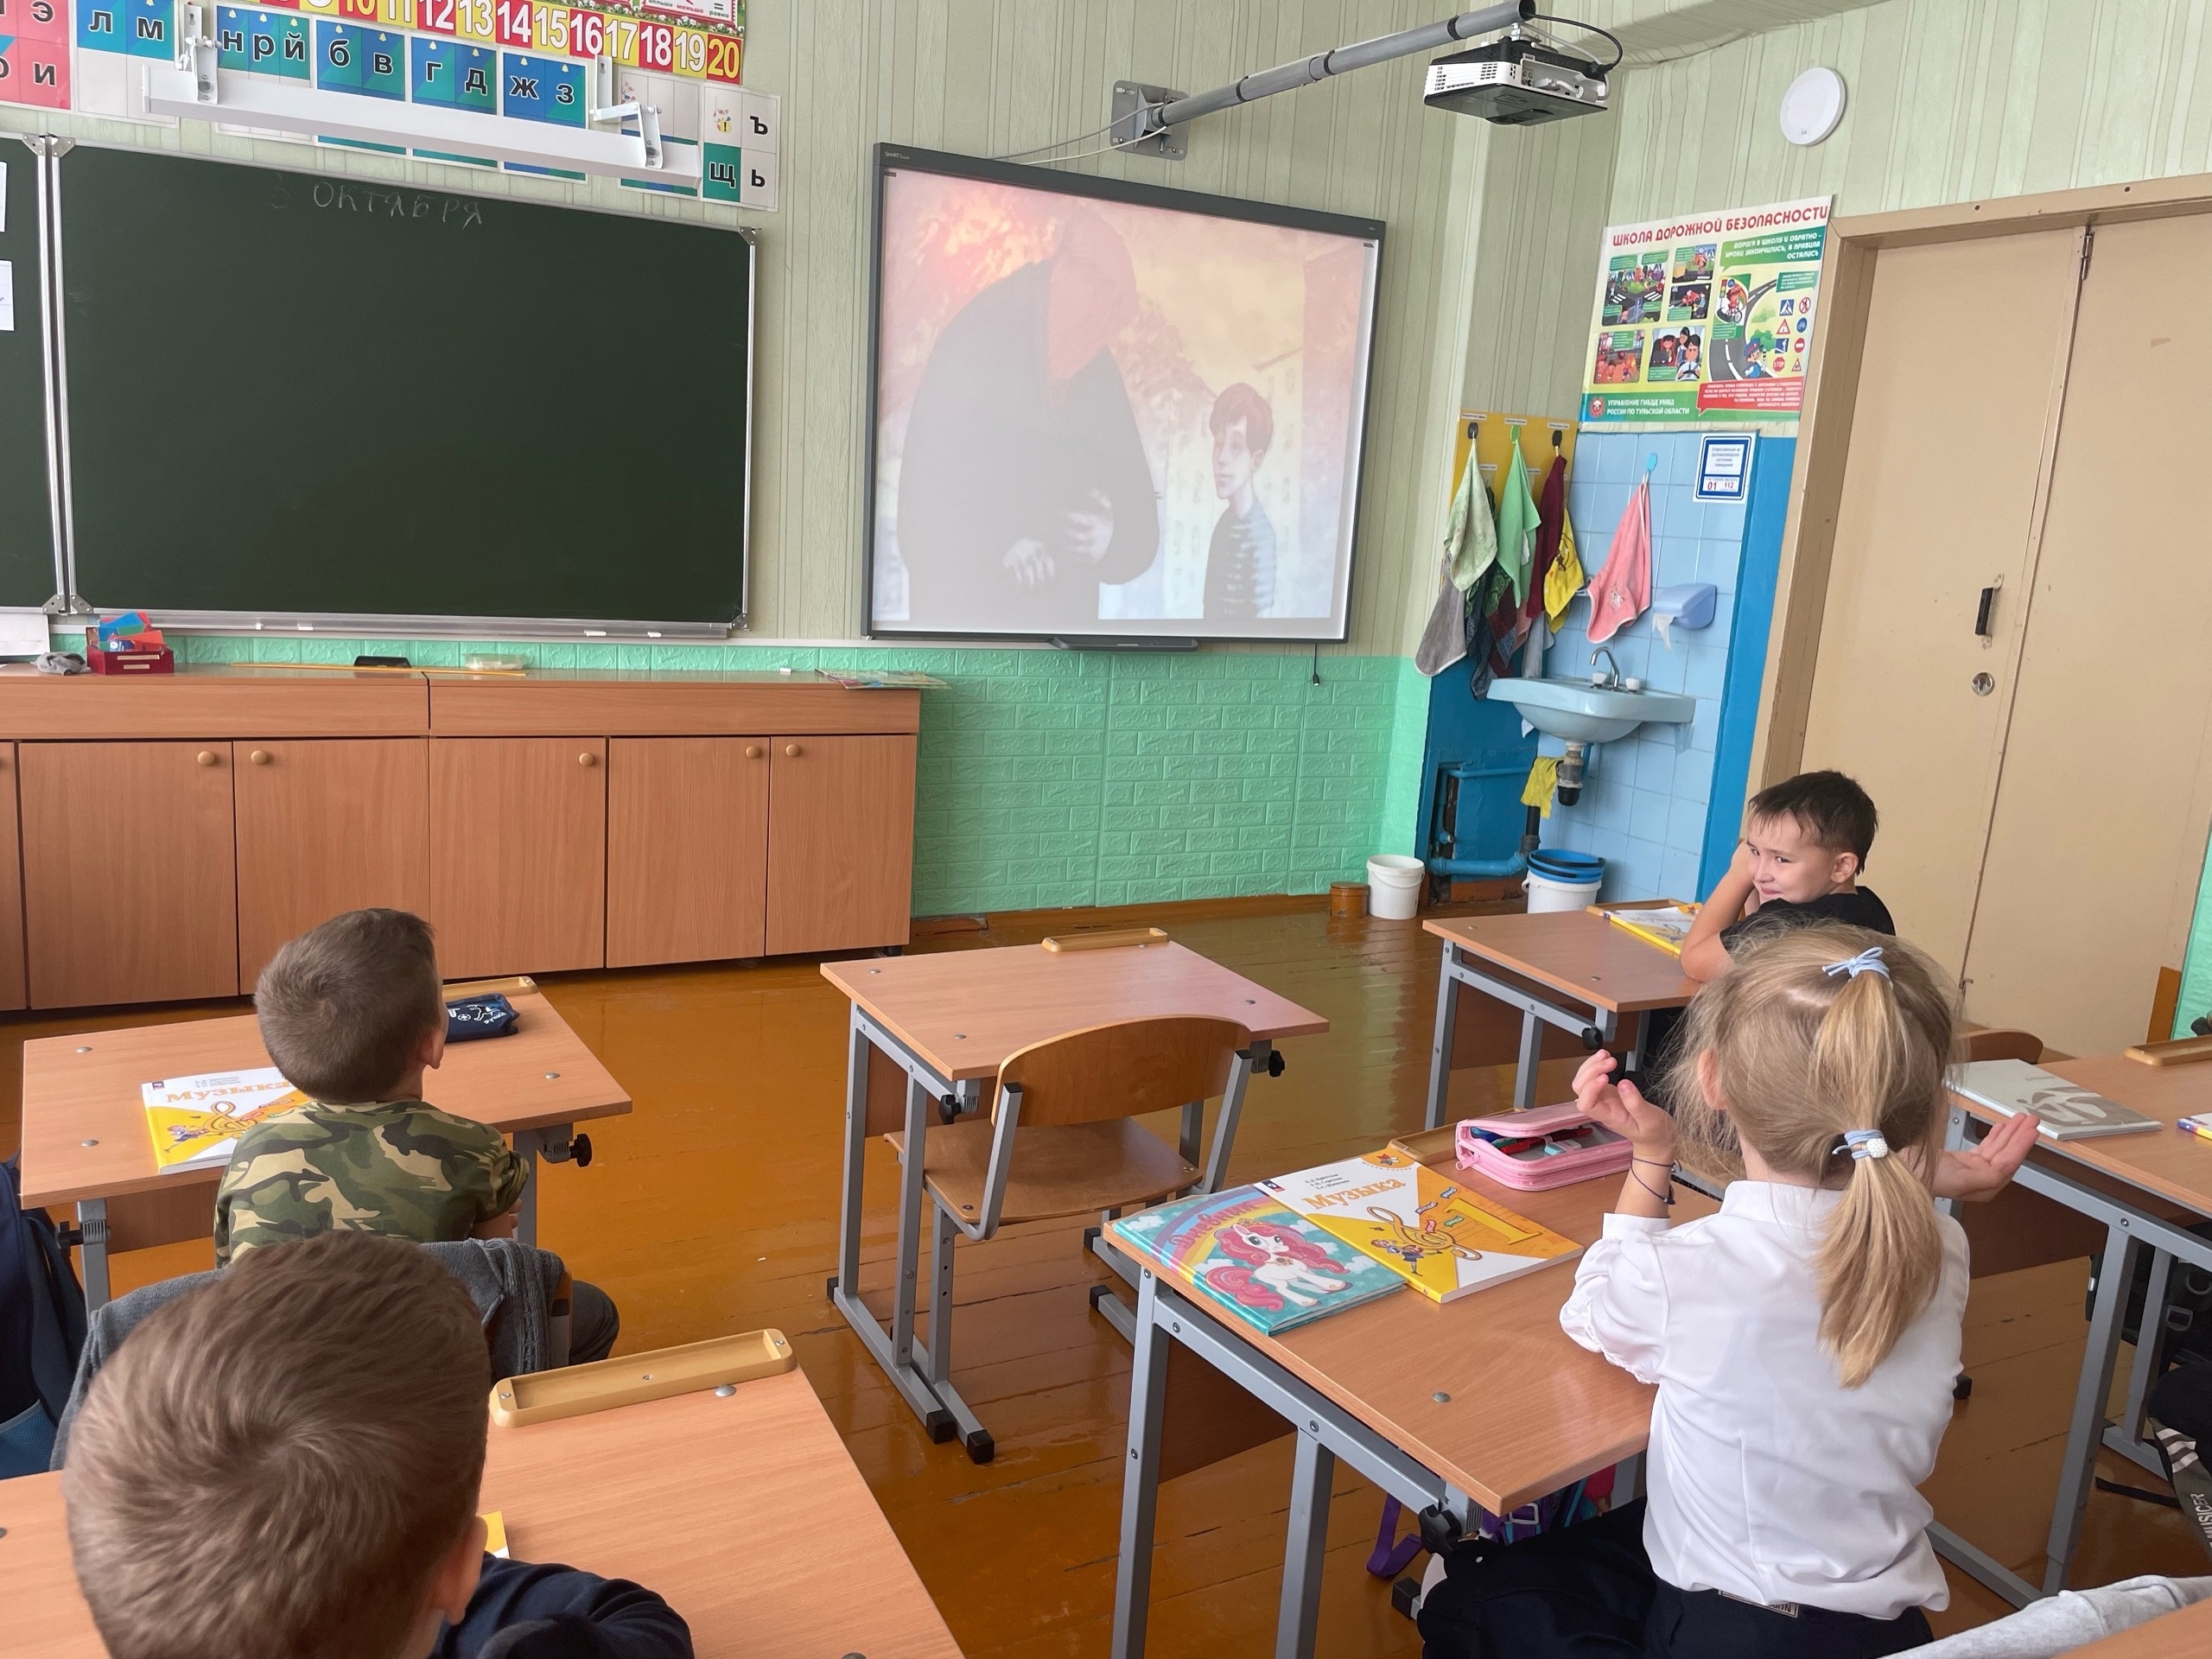 Сегодня учащиеся 1 класса смотрели мультфильм «Галчонок» ко Дню защиты животных.